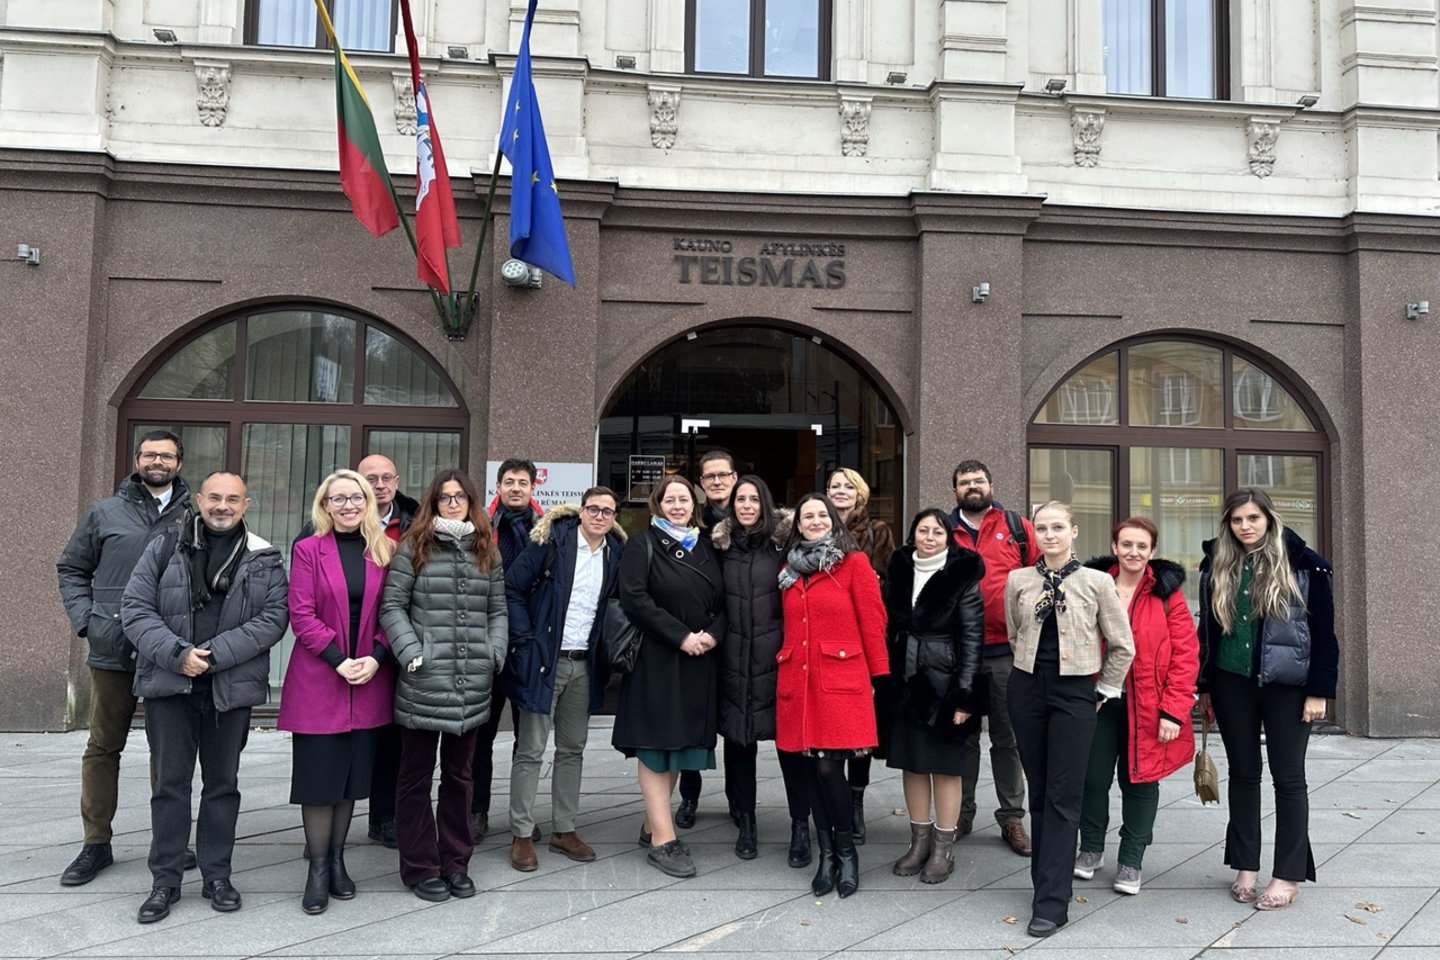  Į Kauno apylinkės teismą atvyko prokurorų delegacija iš 6 užsienio valstybių. <br> T. Merkevičiūtės nuotr.